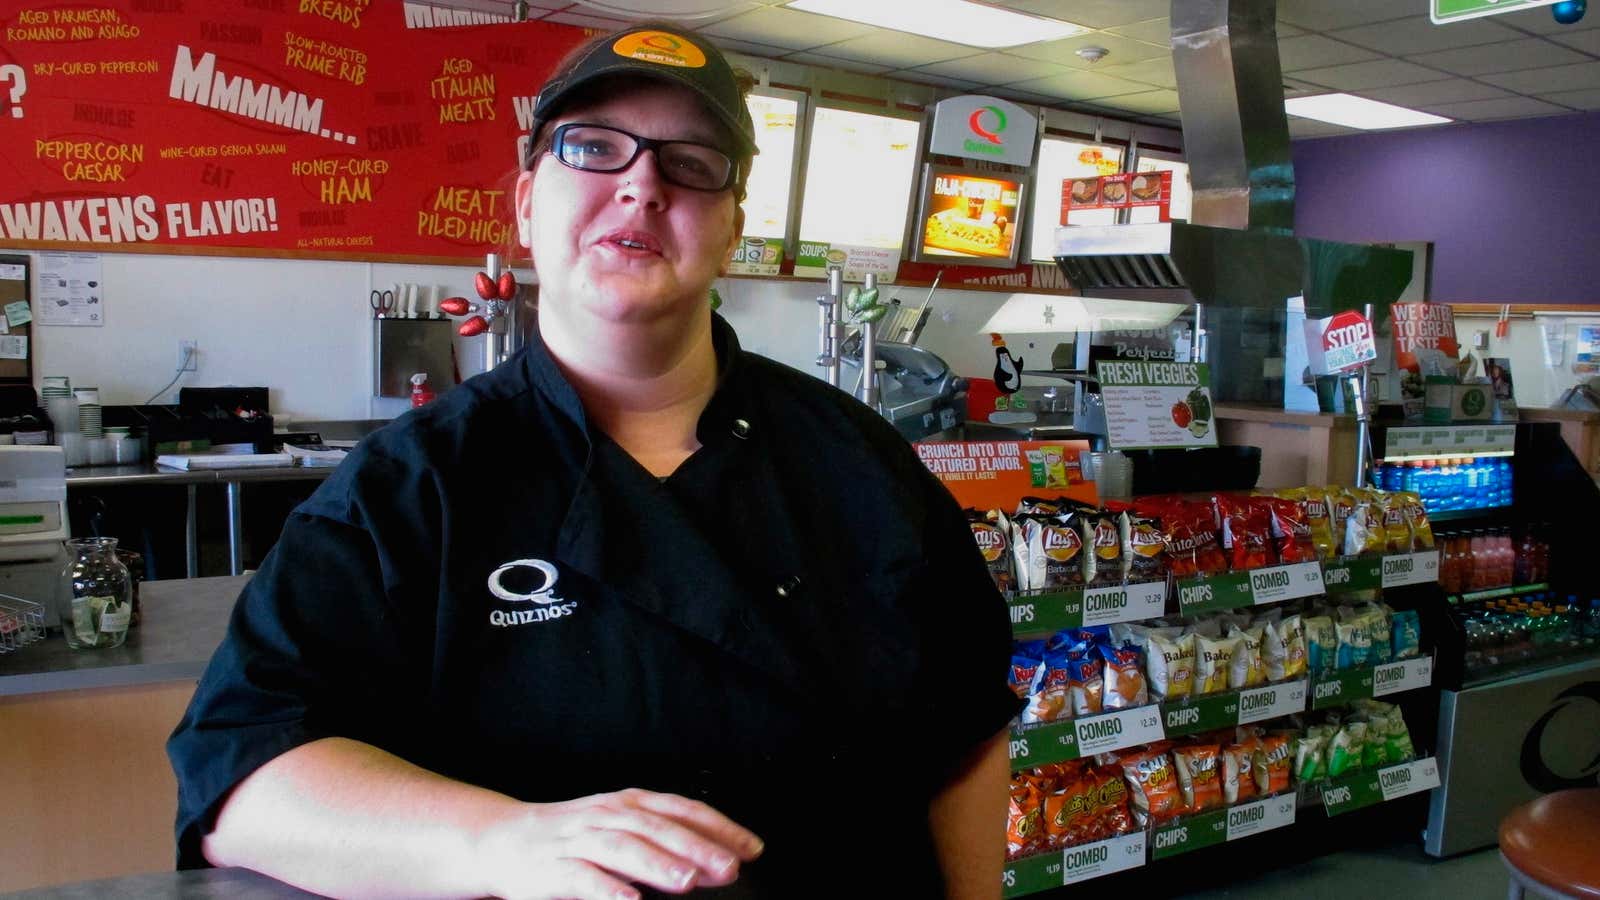 A Montana woman earning minimum wage.